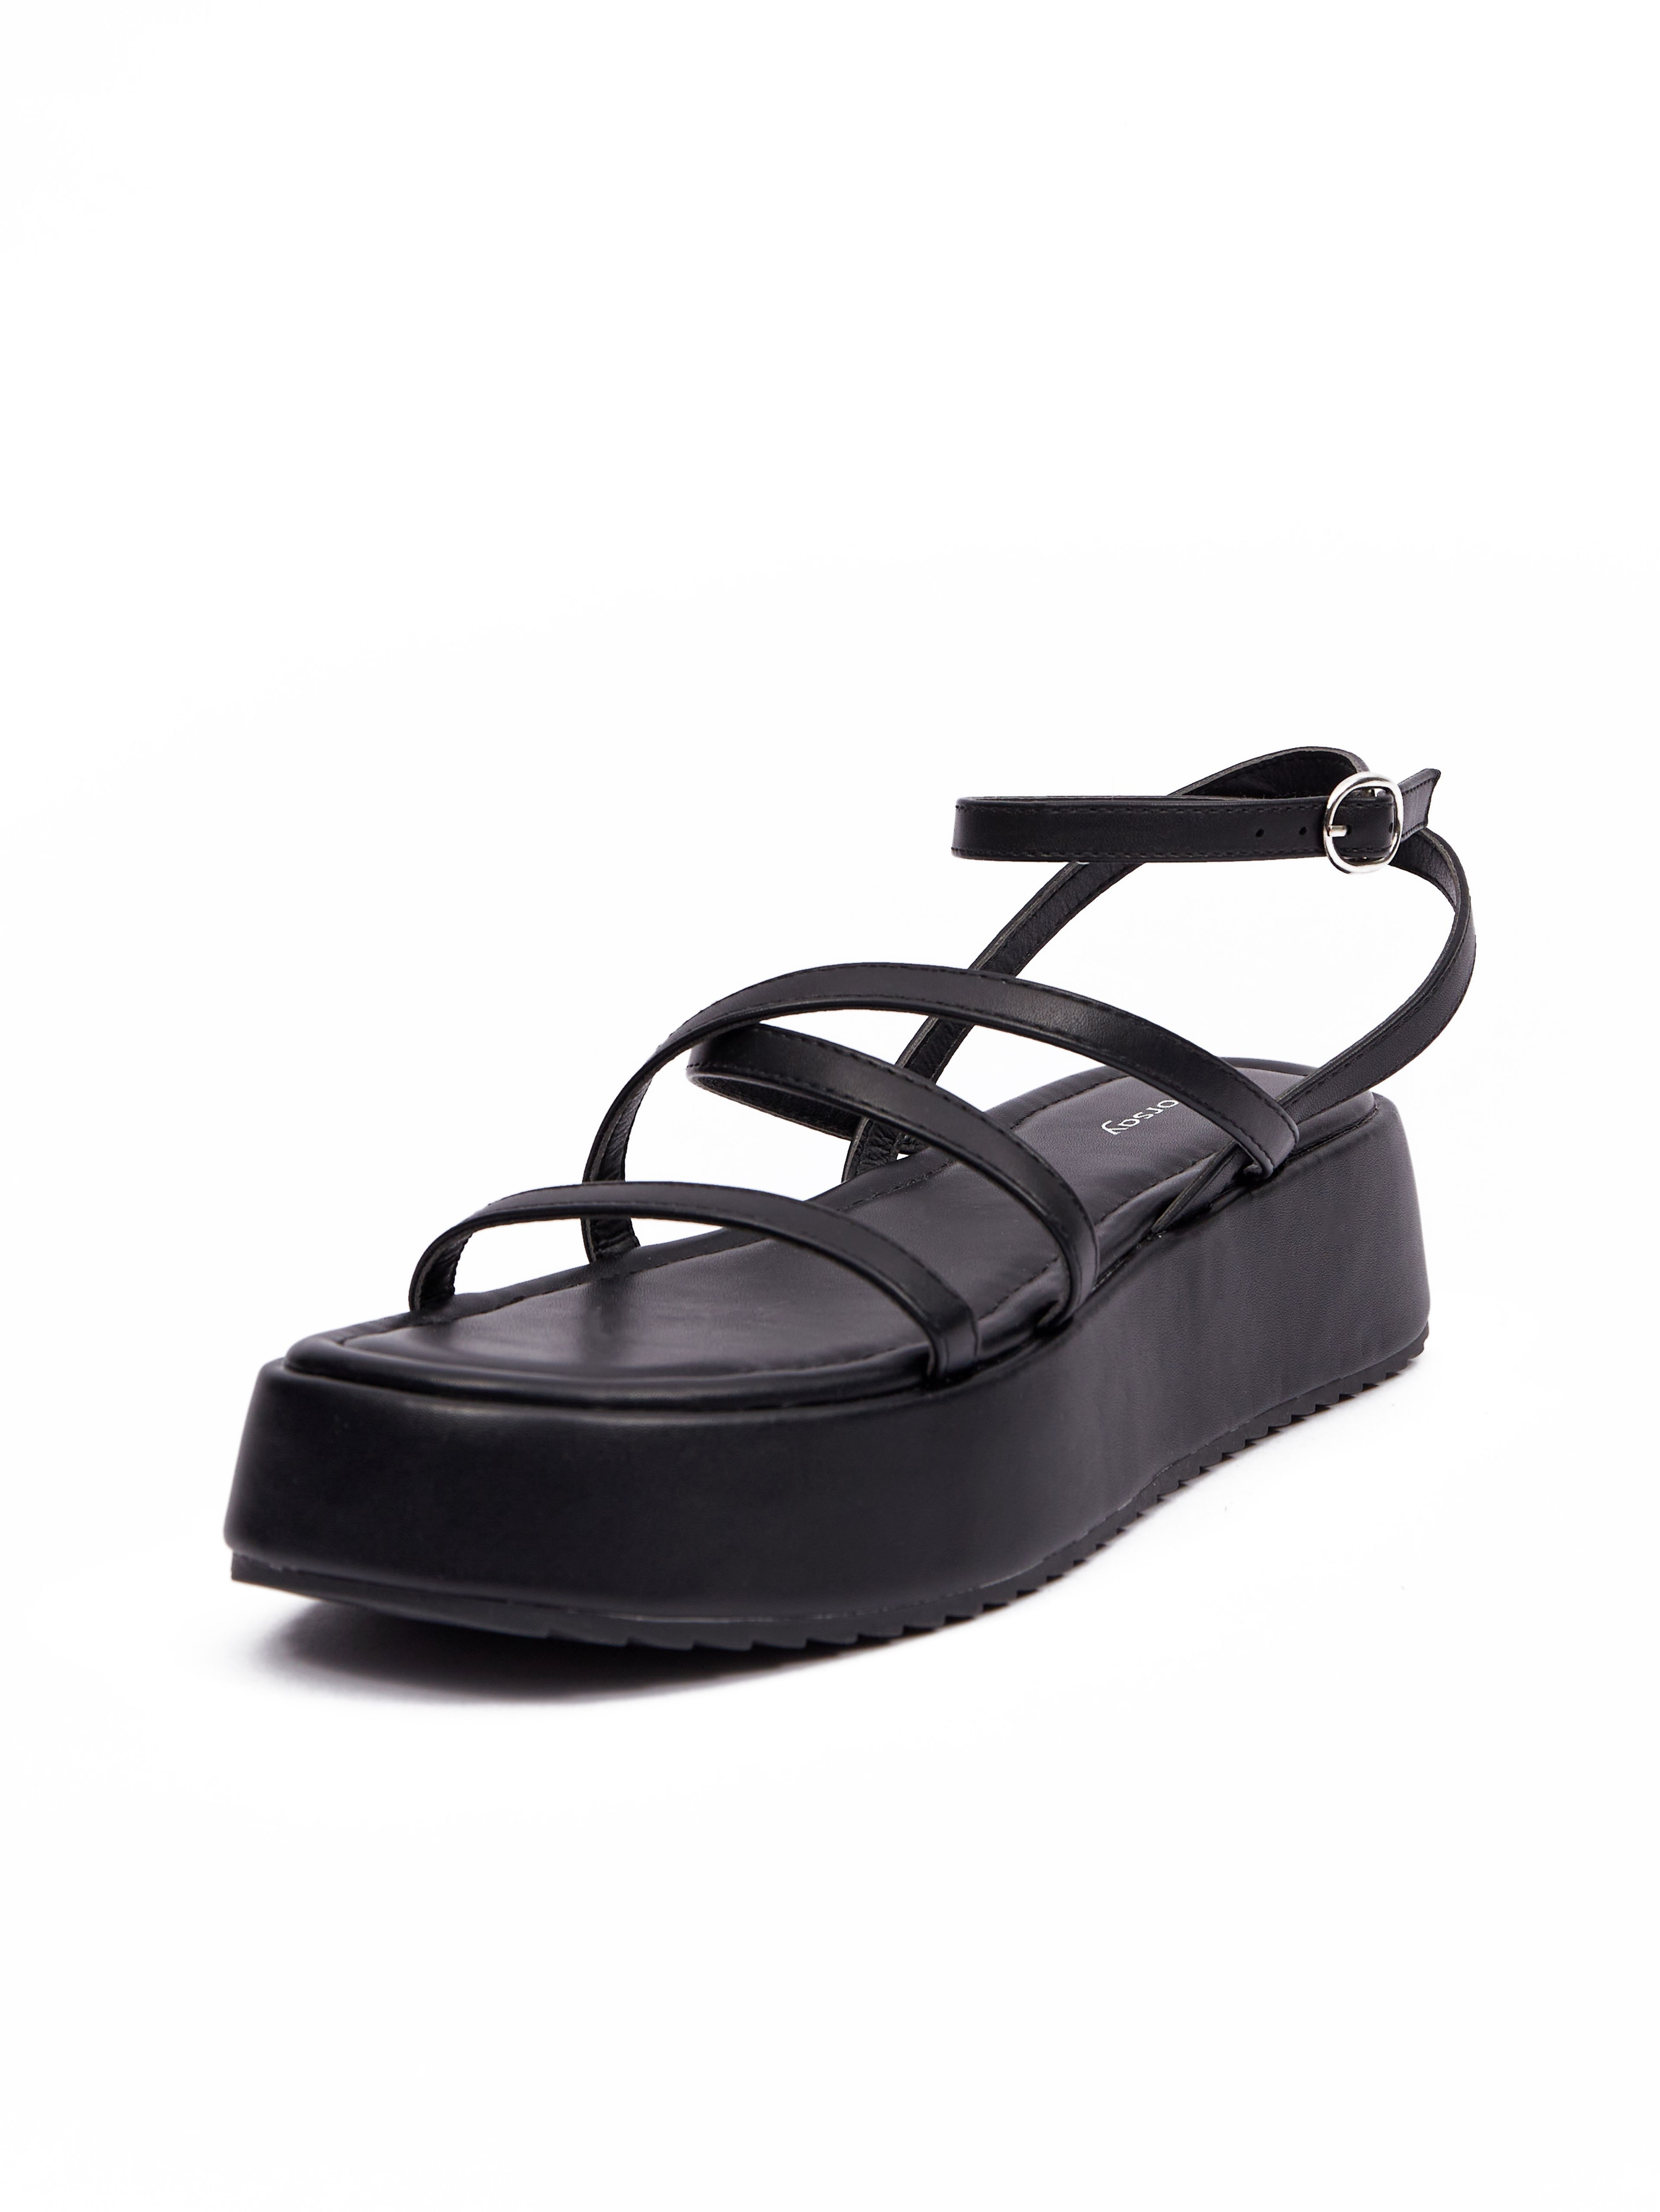 Černé dámské sandály na platformě ORSAY